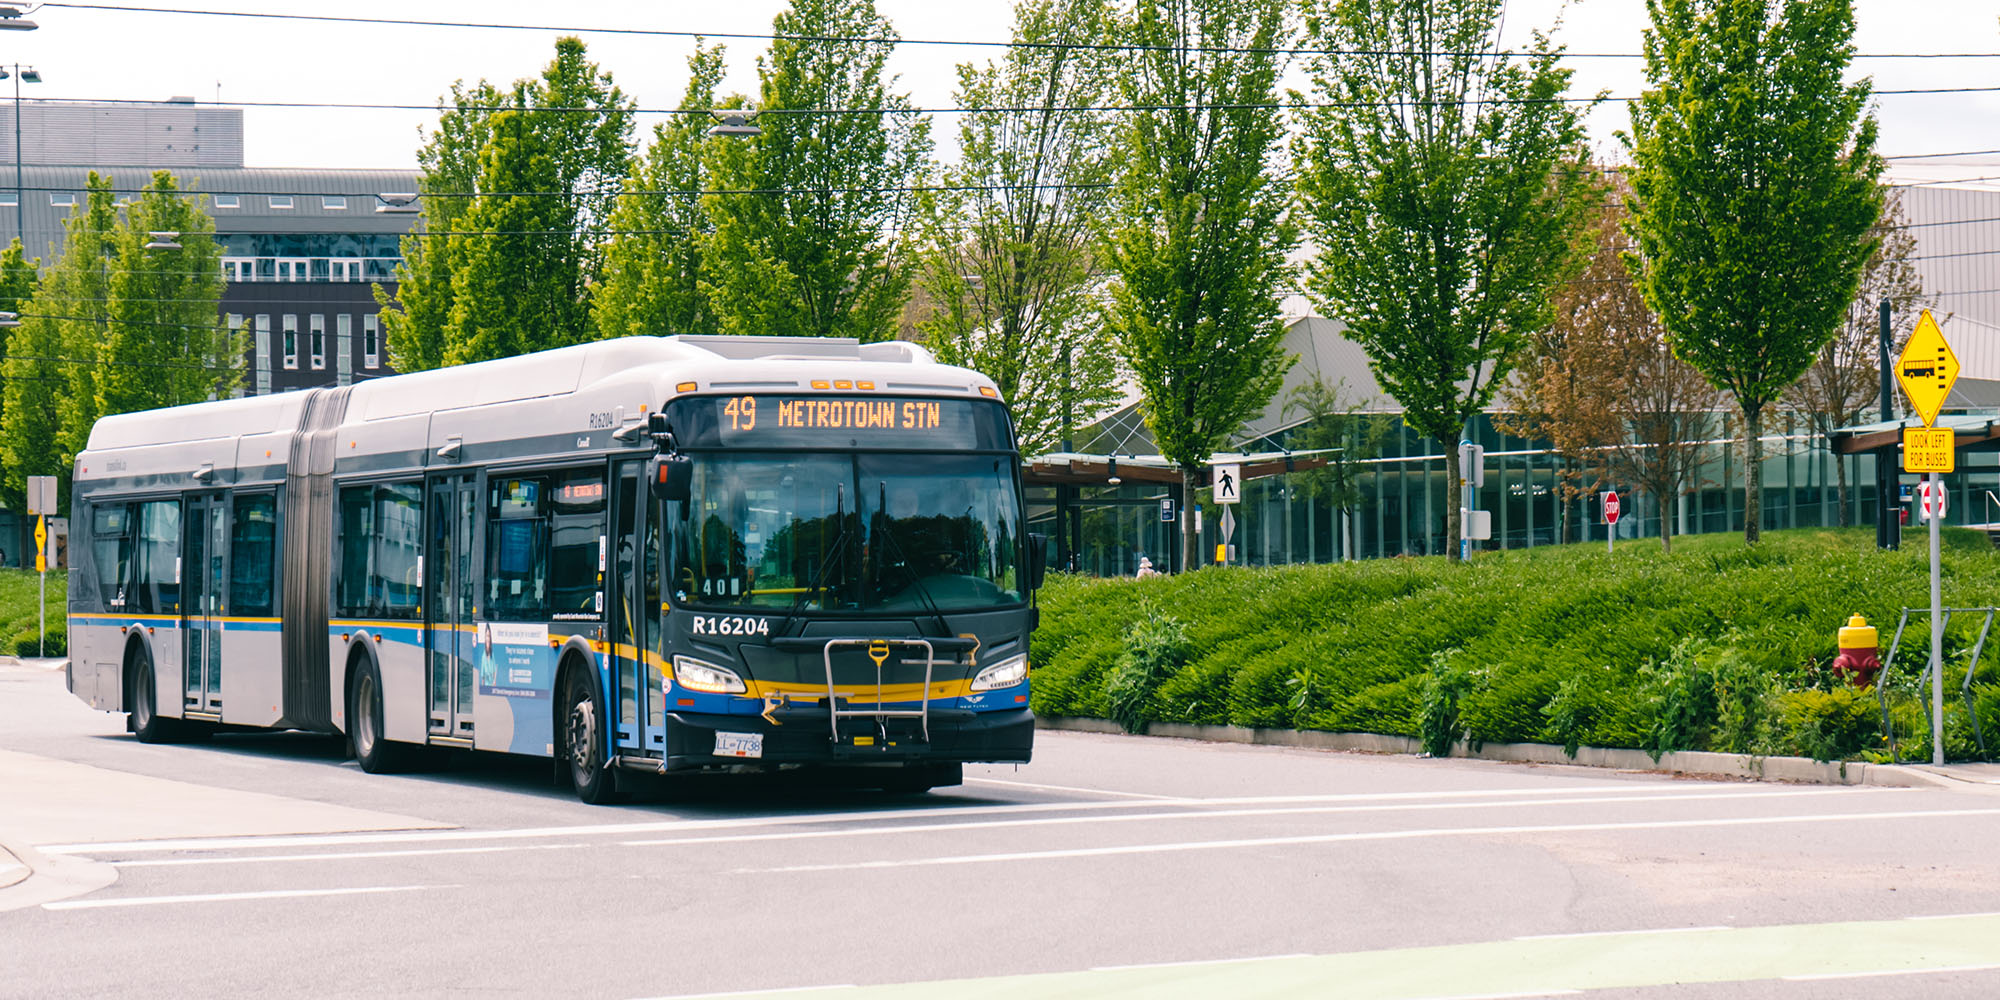 The 49 Metrotown Station bus departing UBC Bus Exchange